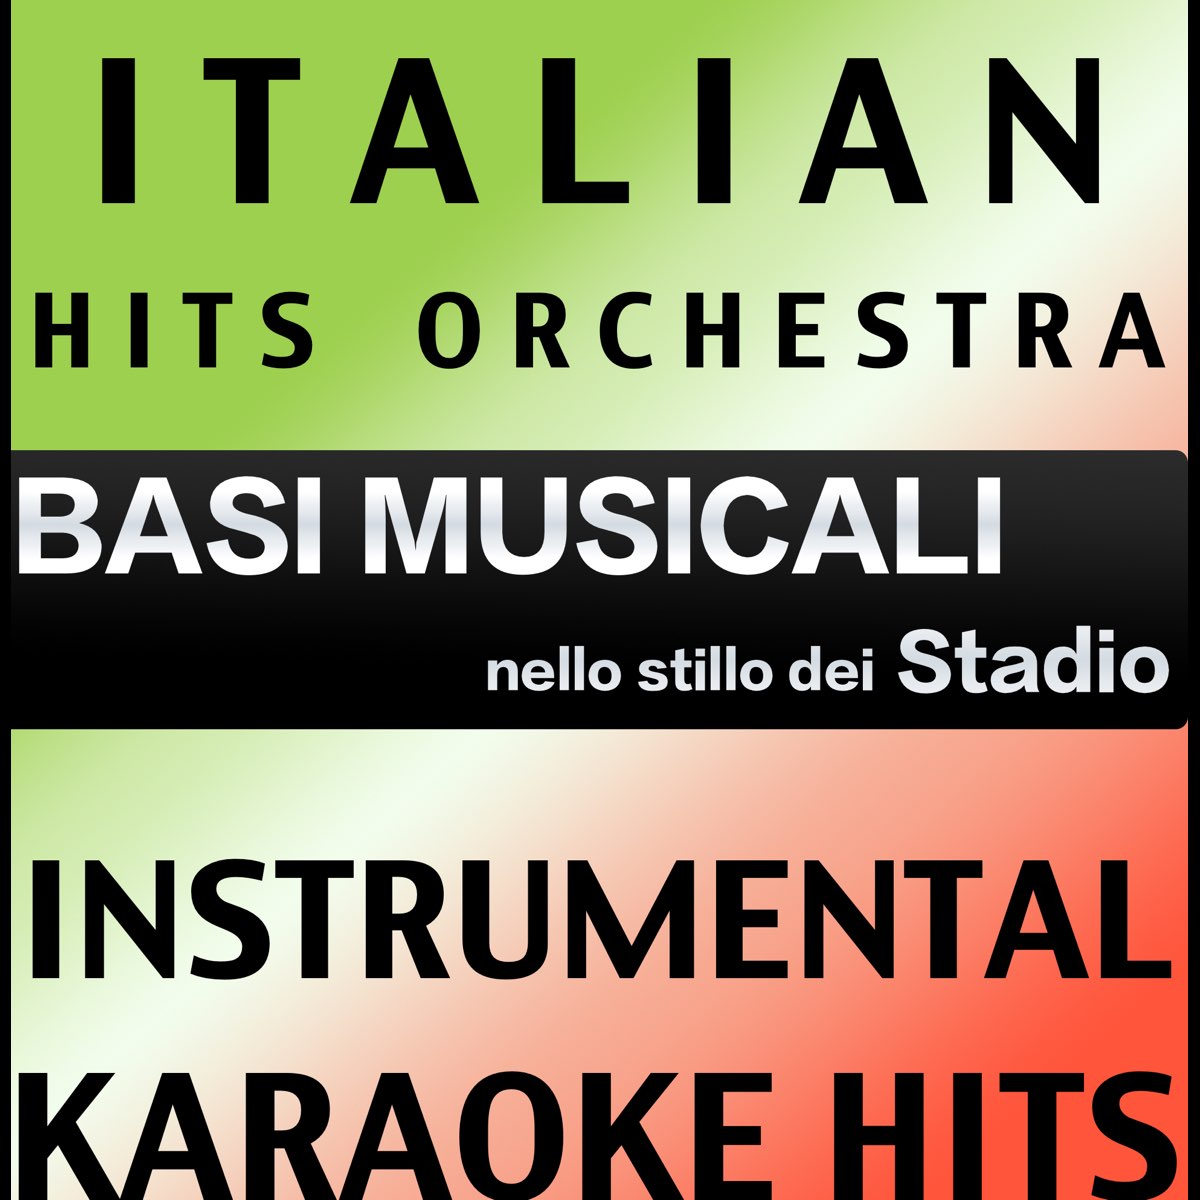 Basi Musicale Nello Stilo dei Stadio (Instrumental Karaoke Tracks) - Album  di Italian Hits Orchestra - Apple Music